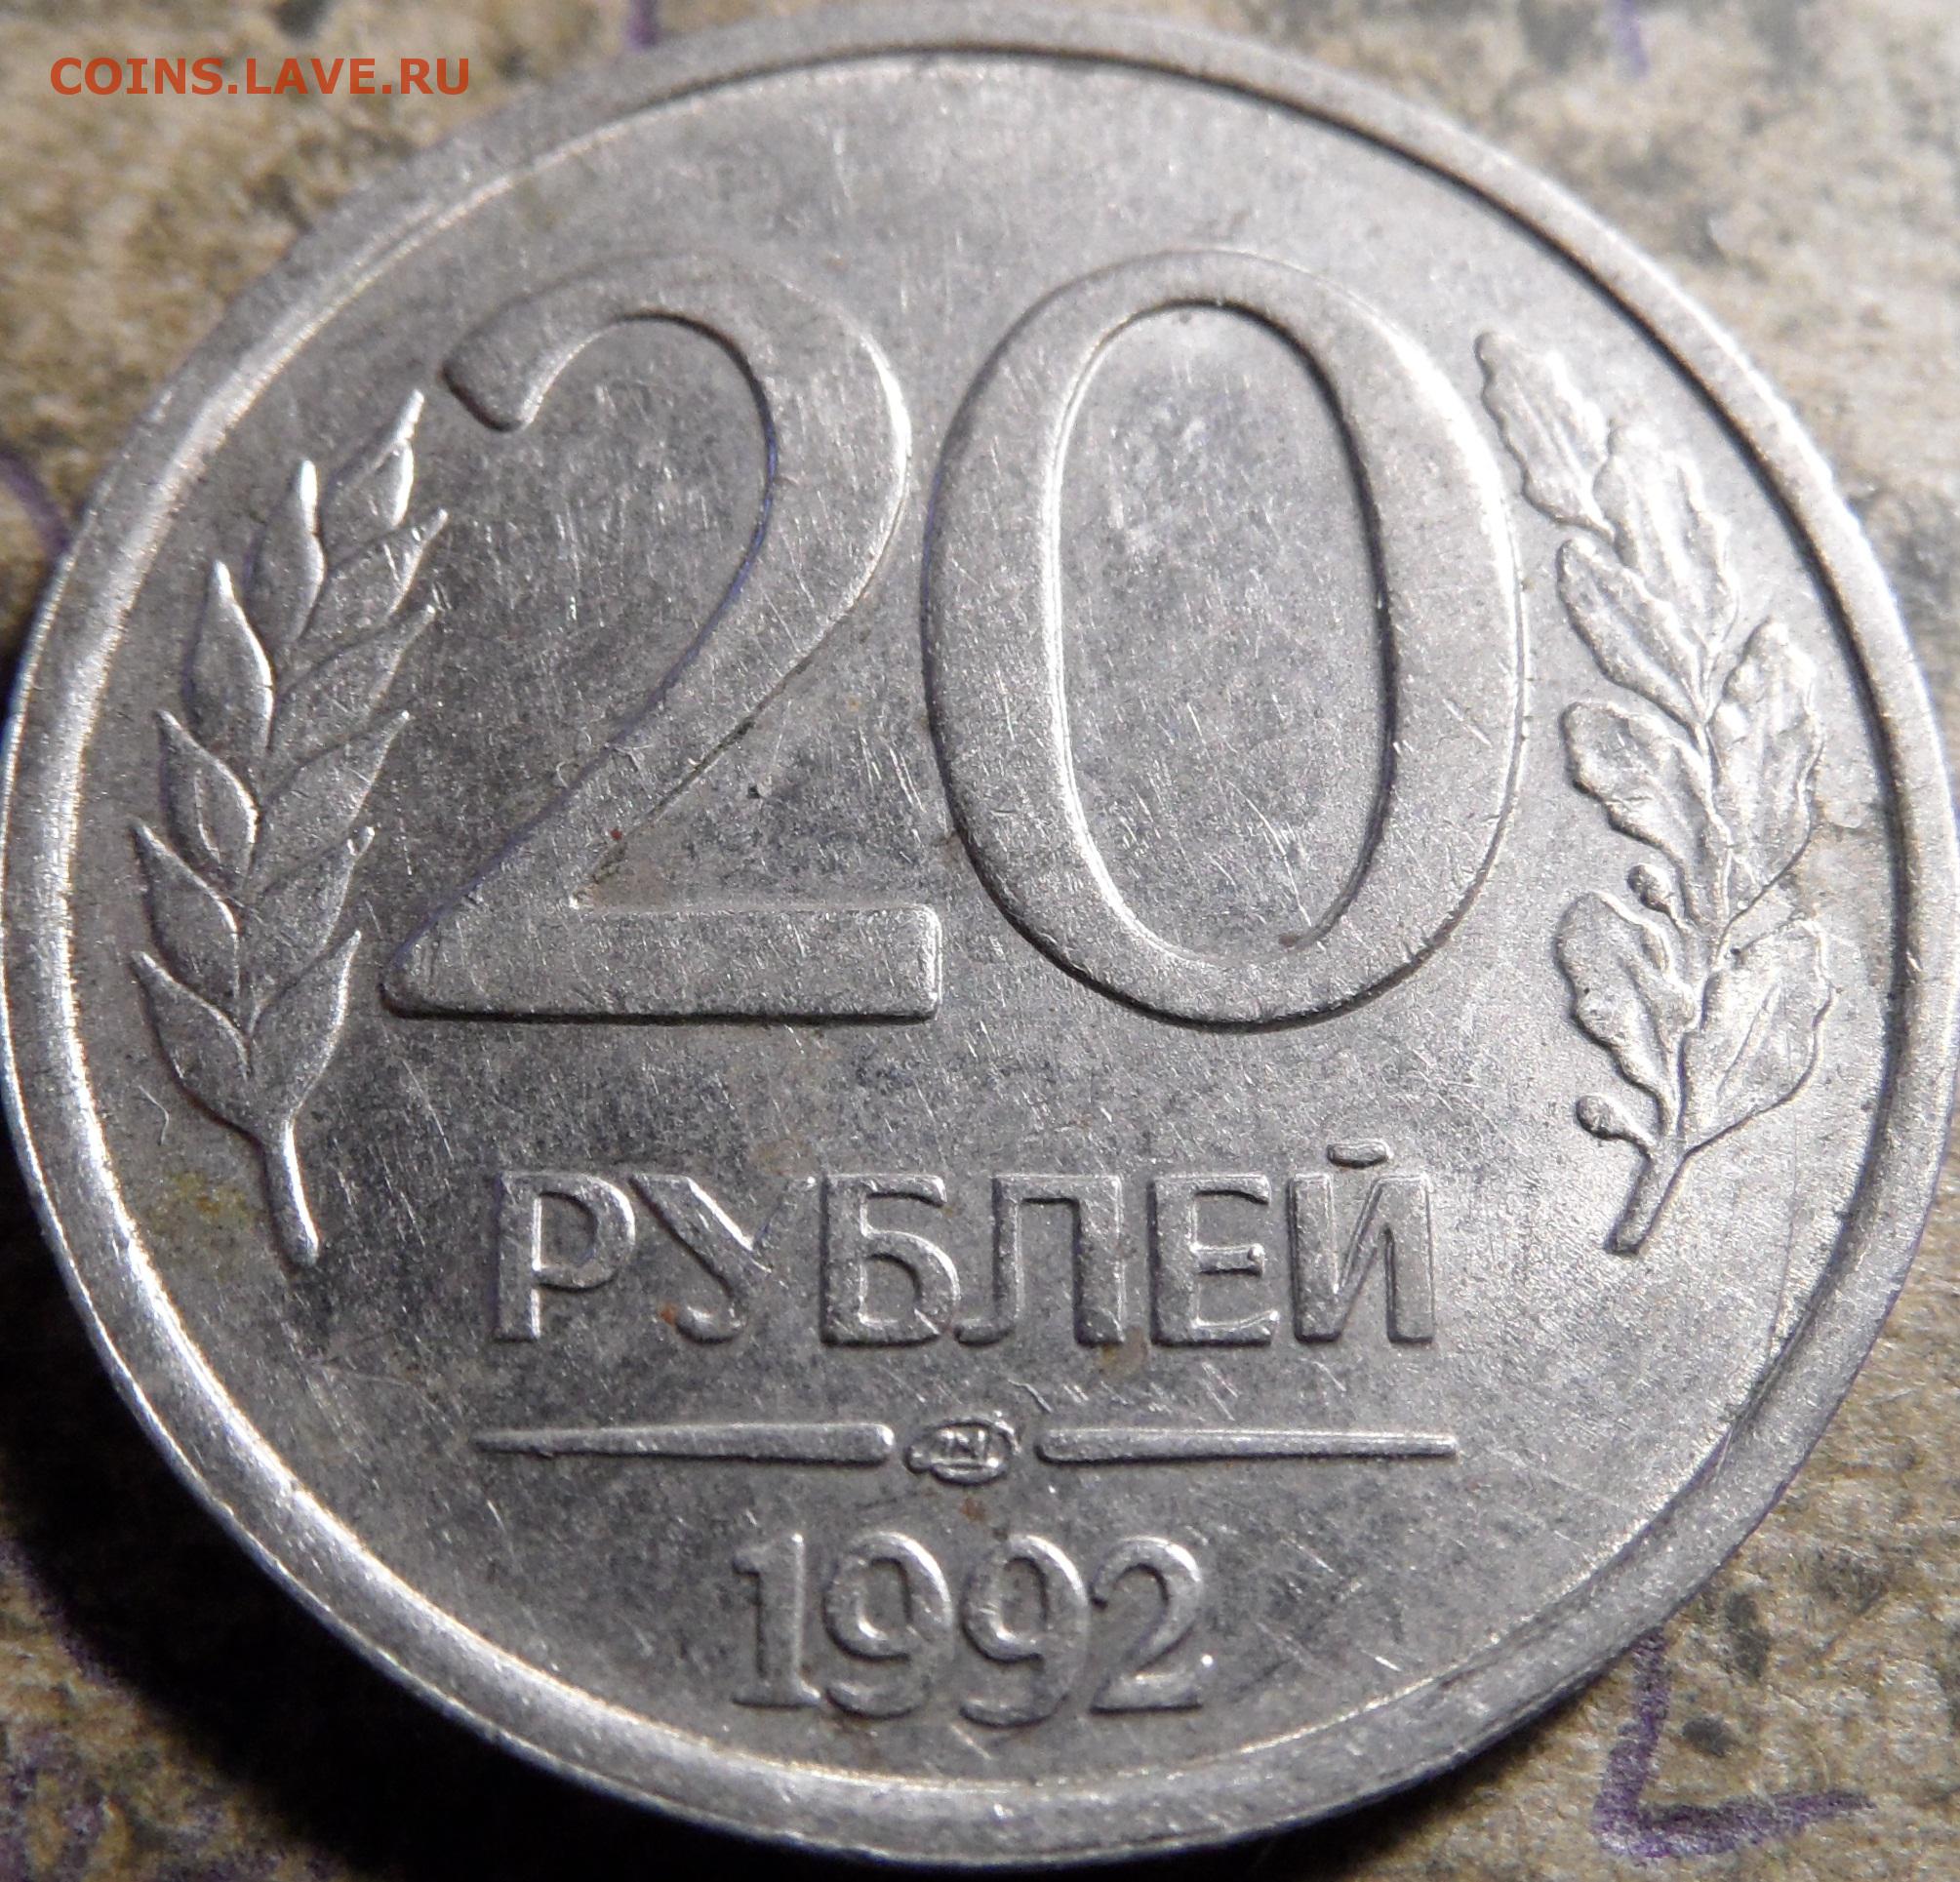 300 90 рублей. 20 Рублей 1992 ЛМД. Монета 20 копеек 1992 года. Монета 20 рублей 1992. Двадцать рублей монета.